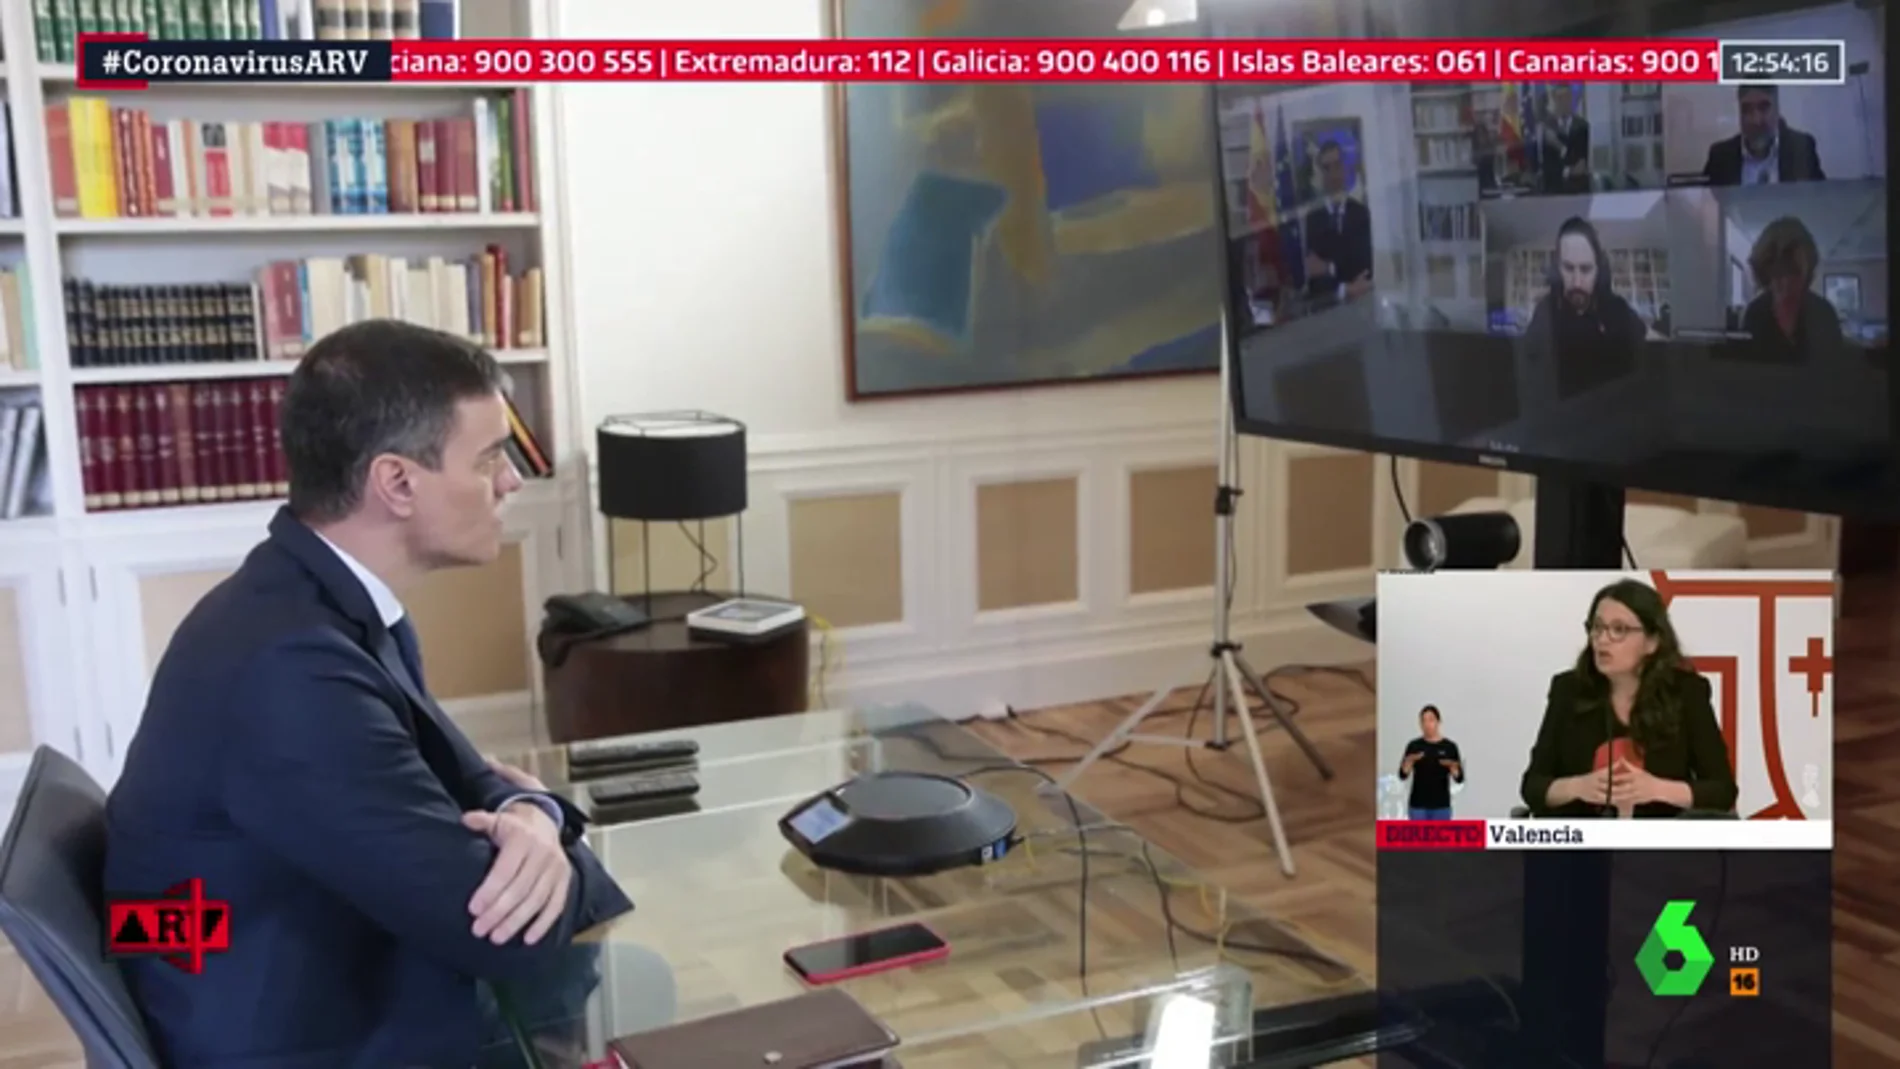 La imagen institucional de la crisis por coronavirus: reunión por videoconferencia entre Sánchez y sus ministros